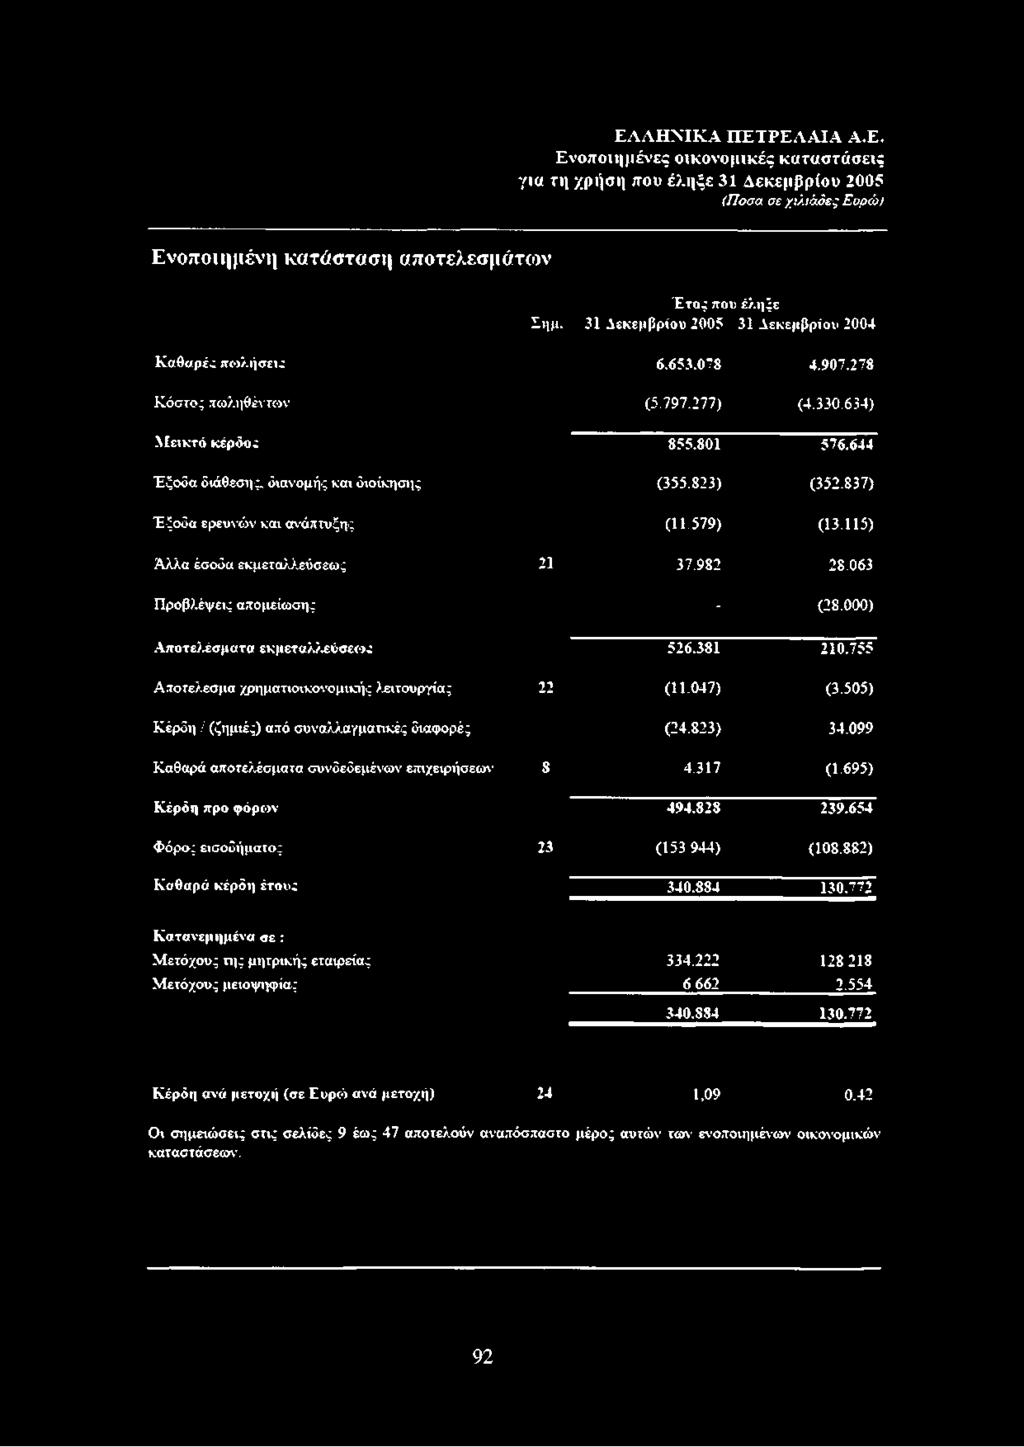 απομείωσης Αποτελέσματα εκμεταλλεύσεως Αποτέλεσμα χρηματιοικονομικής λειτουργίας Κέρδη / (ζημιές) από συναλλαγματικές διαφορές Καθαρά αποτελέσματα συνόεδεμένων επιχειρήσεων Κέρδη προ φόρων Φόρος